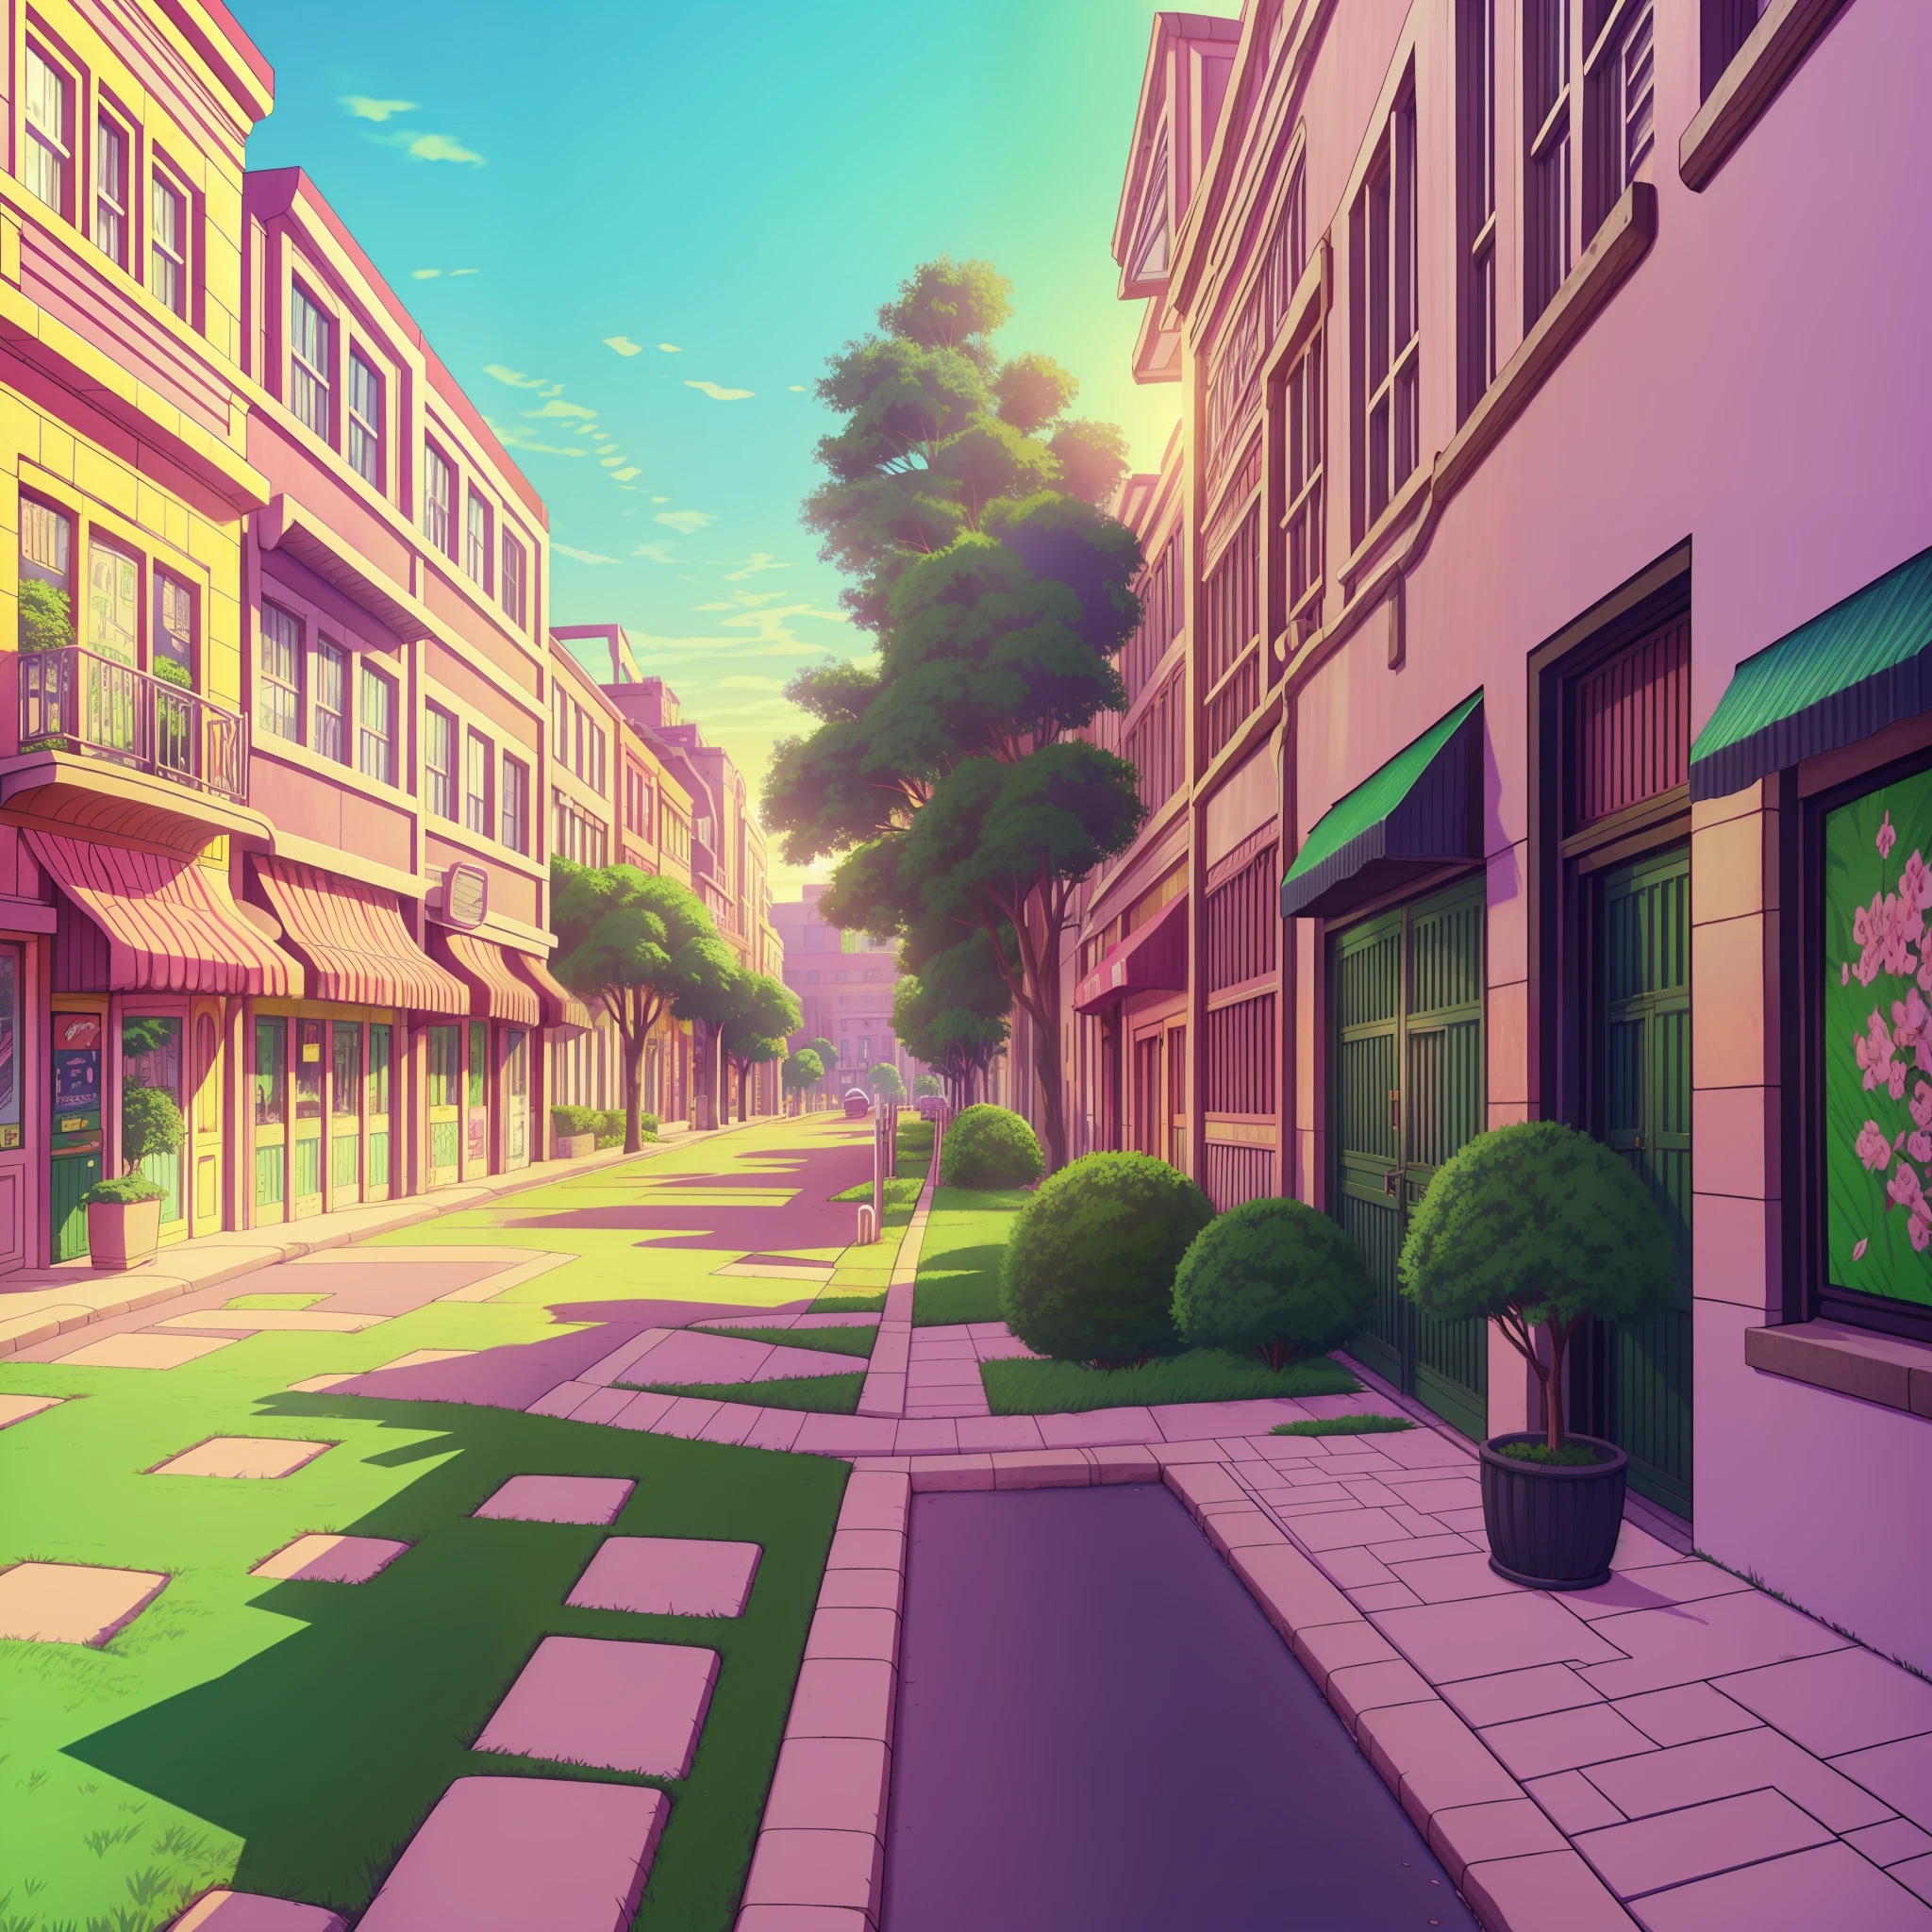 一条街道的卡通插图，有粉色大门和绿树, 市中心背景, 城市街景背景, 商场背景, 小镇背景, 背景技术, 背景技术work, 街道背景, 随机背景场景, 2D游戏美术背景, 墙纸!, 城市废墟背景, 高中背景, 动漫风格城市景观, anime 背景技术, 公园背景, 排球场背景